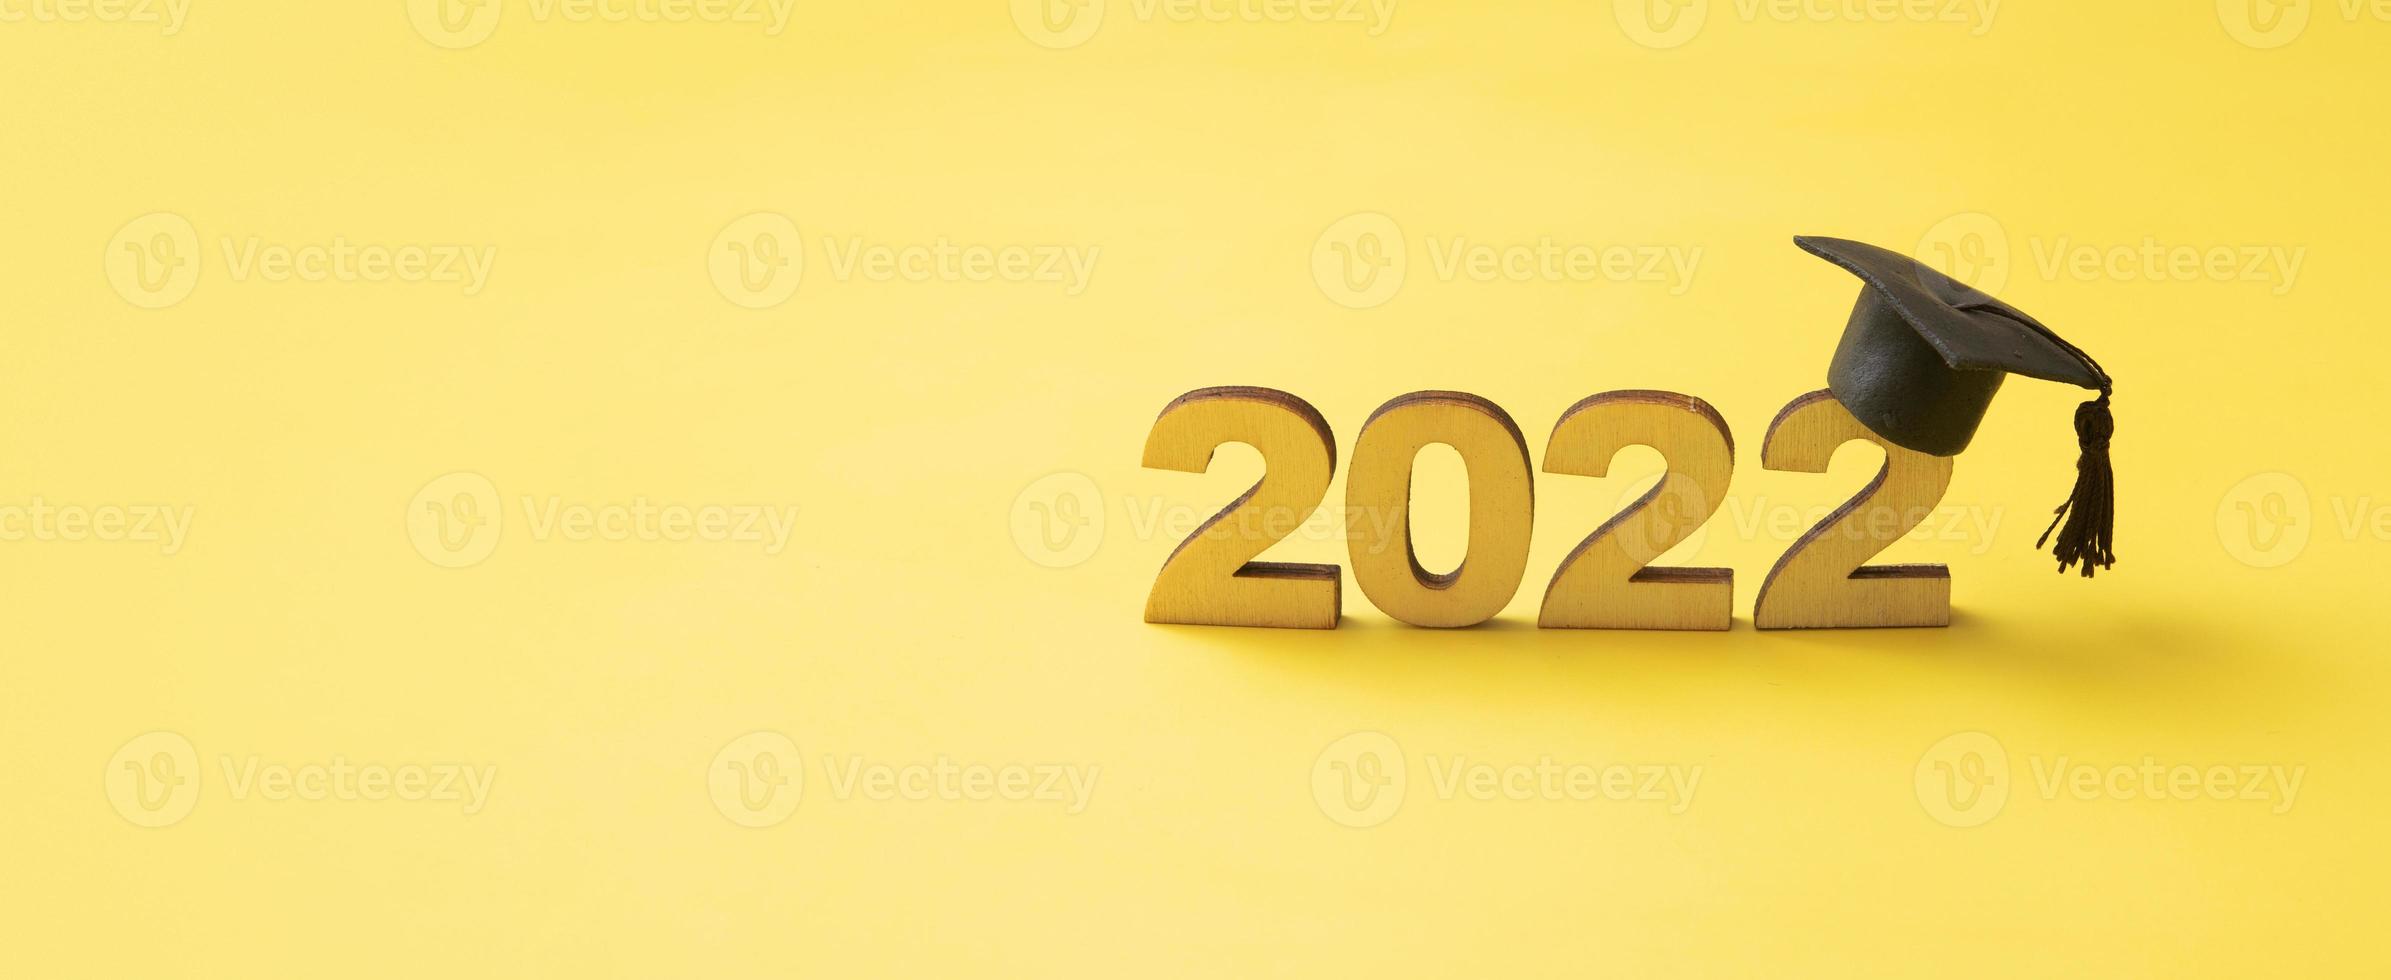 afgestudeerde hoed of pet met houten nummer 2022 op een gele glitterachtergrond. klasse 2022 bannerformaat foto